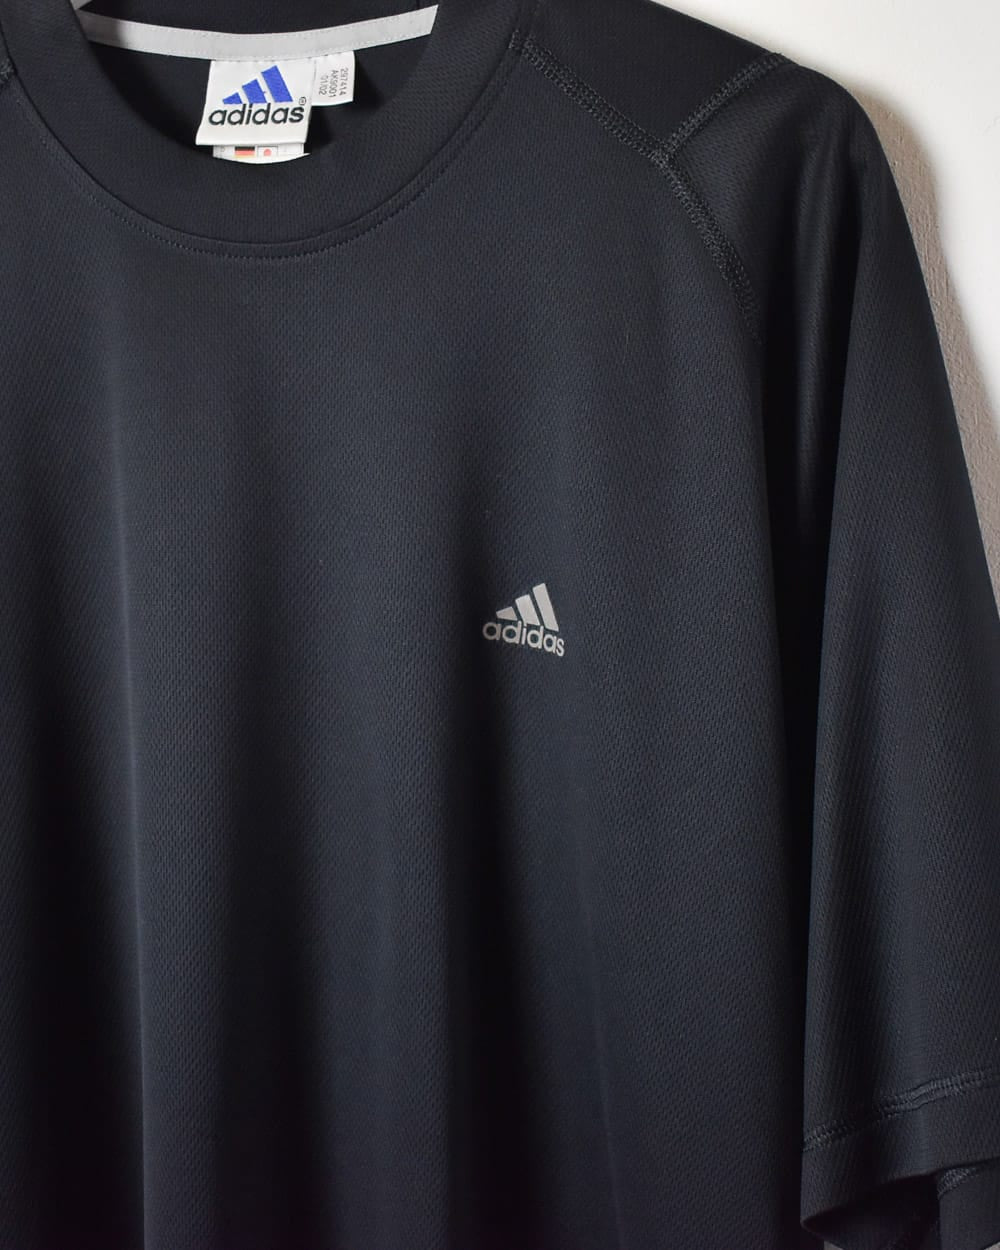 Black Adidas T-Shirt - Medium